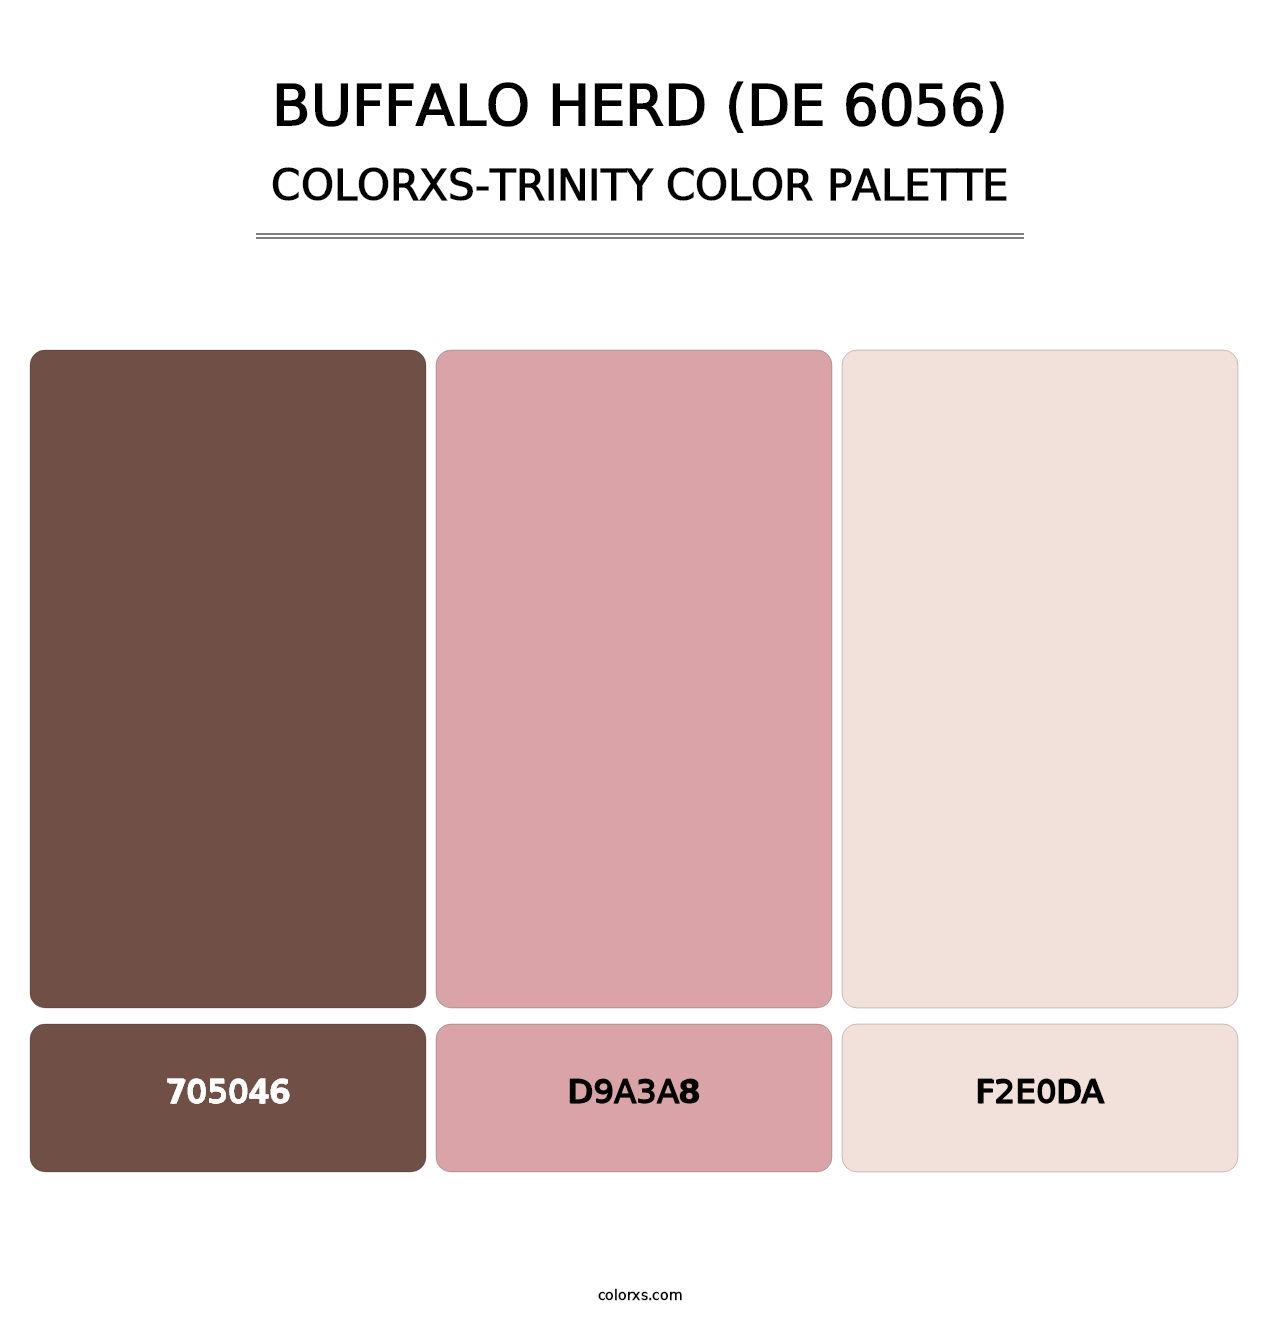 Buffalo Herd (DE 6056) - Colorxs Trinity Palette